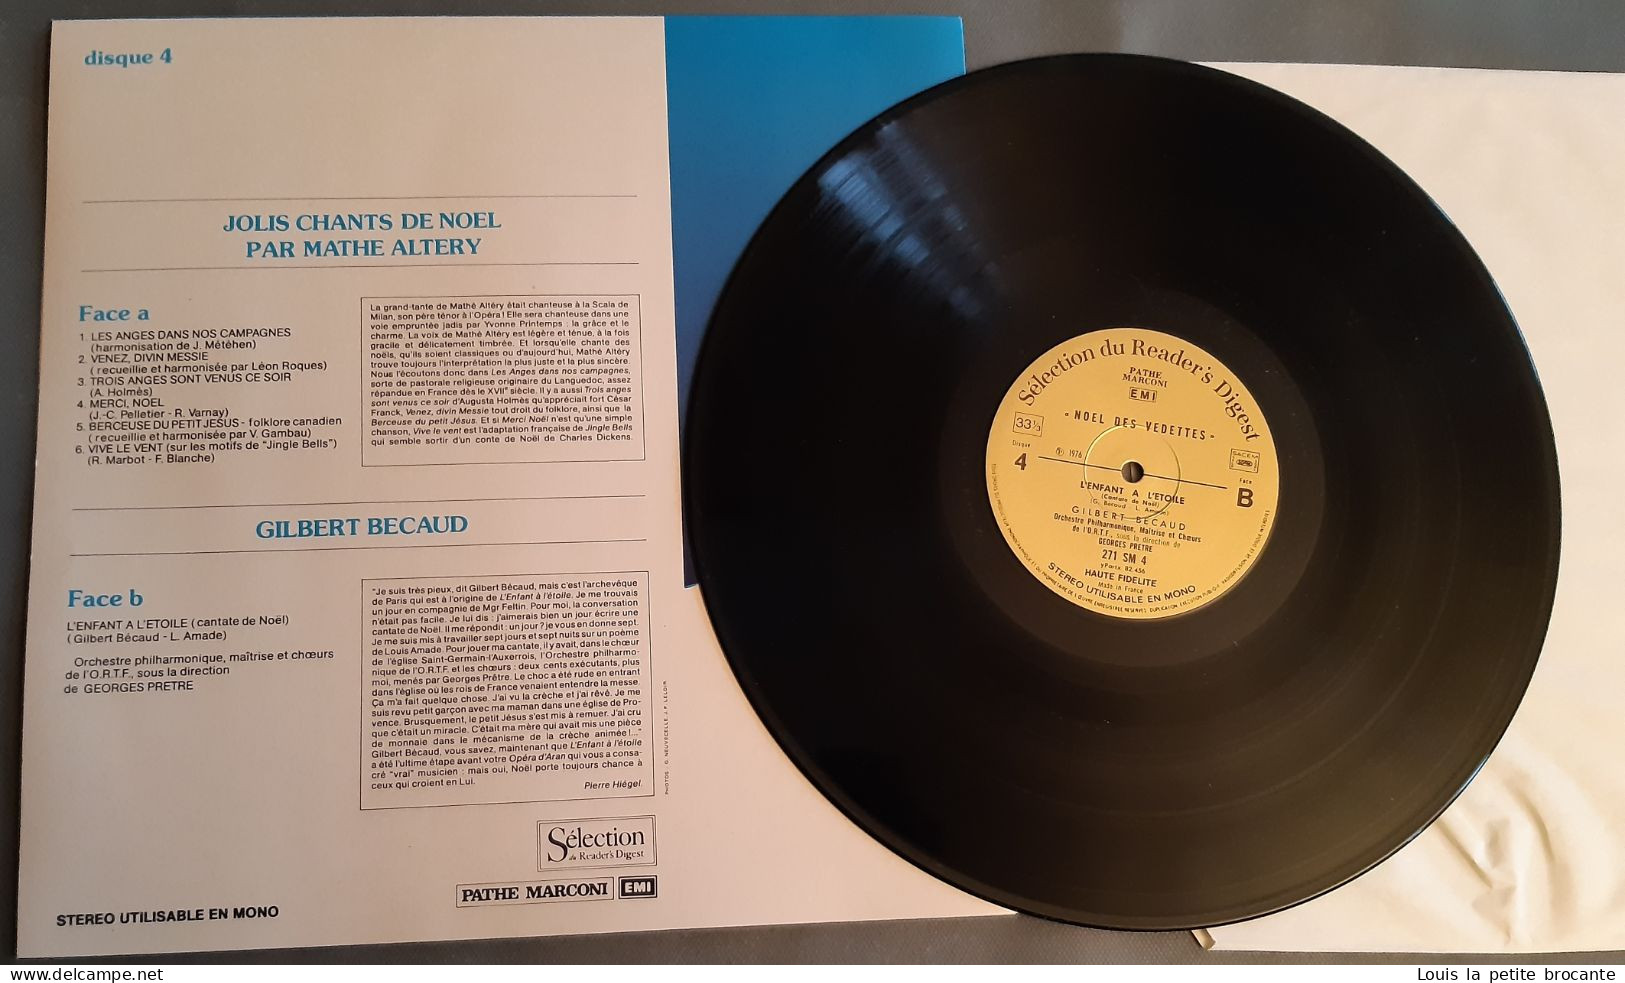 Coffret De 4 Disques Vinyles "Noël Des Vedettes", 33 Tours Stéréo. PATHE MARCONI, EMI, Sélection Du Reader's Digest 1974 - Complete Collections